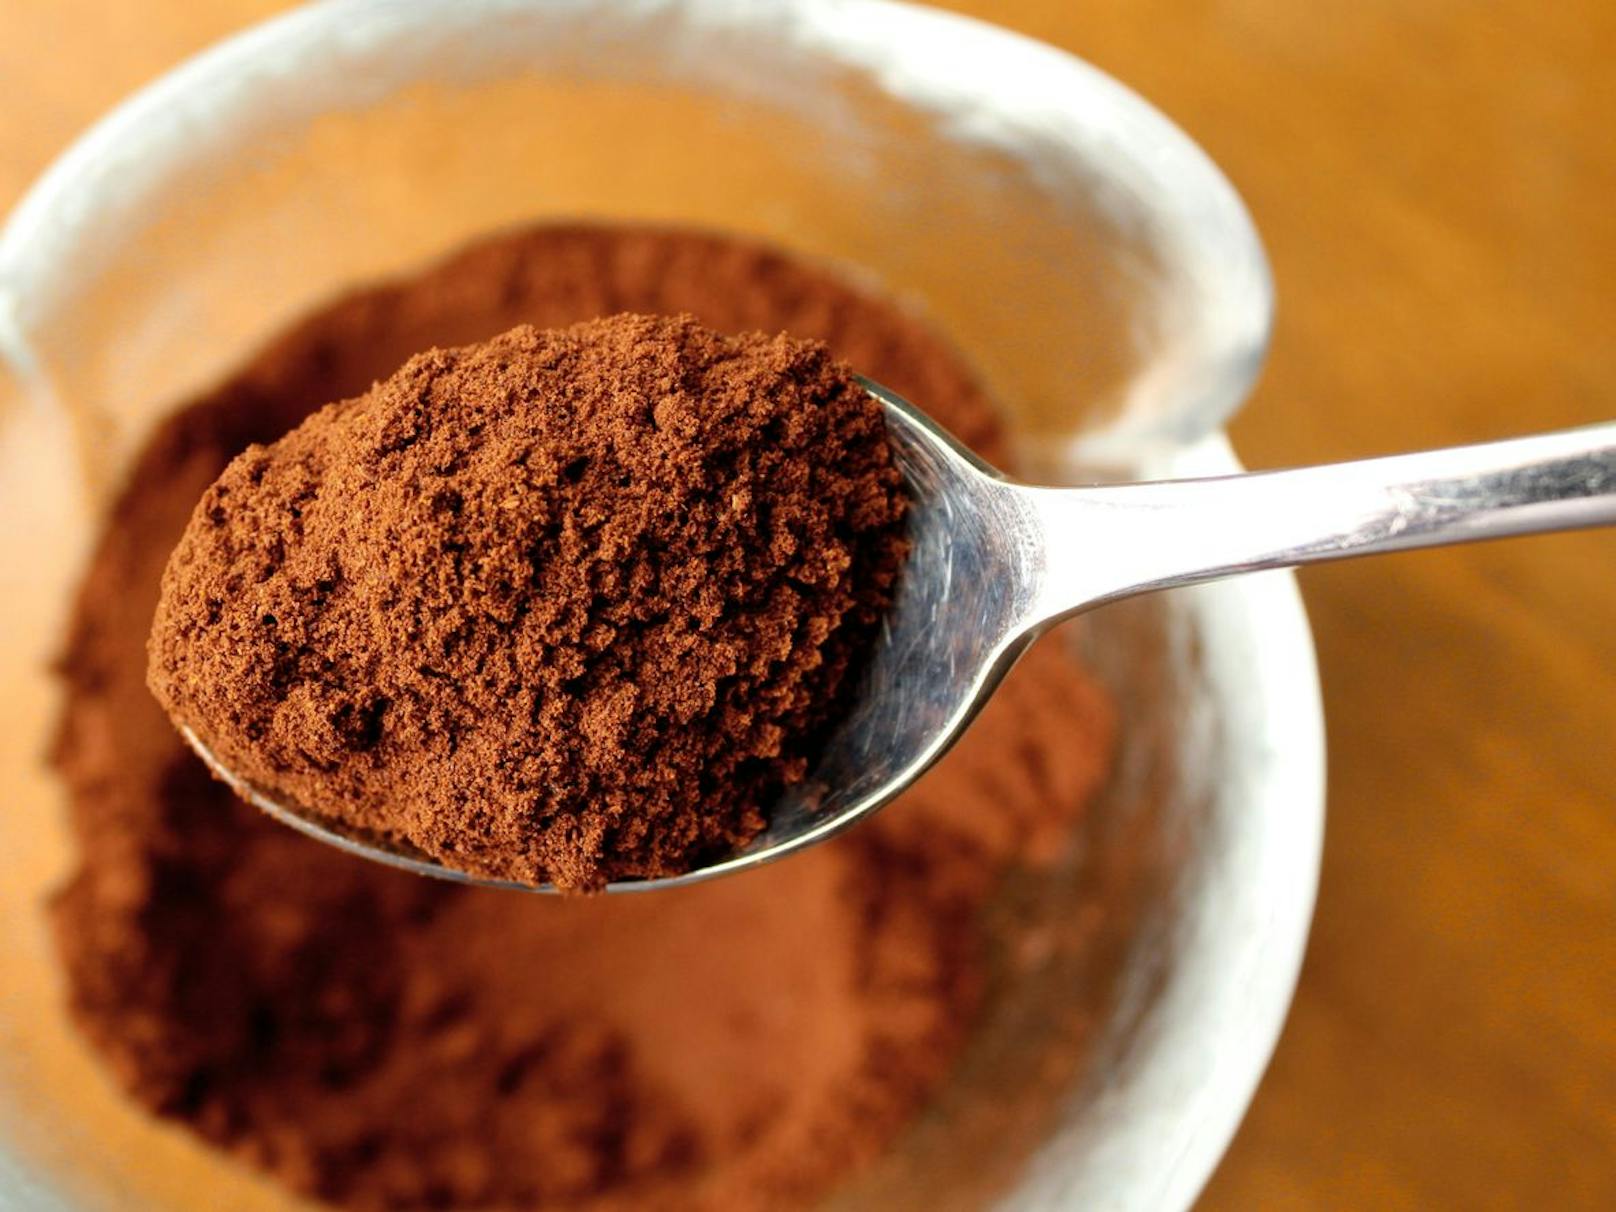 Merke dir, dass eine geringe Dosis bereits ausreicht. Etwa ein Teelöffel von rohem Kakaopulver genügt für deine tägliche Einnahme. 